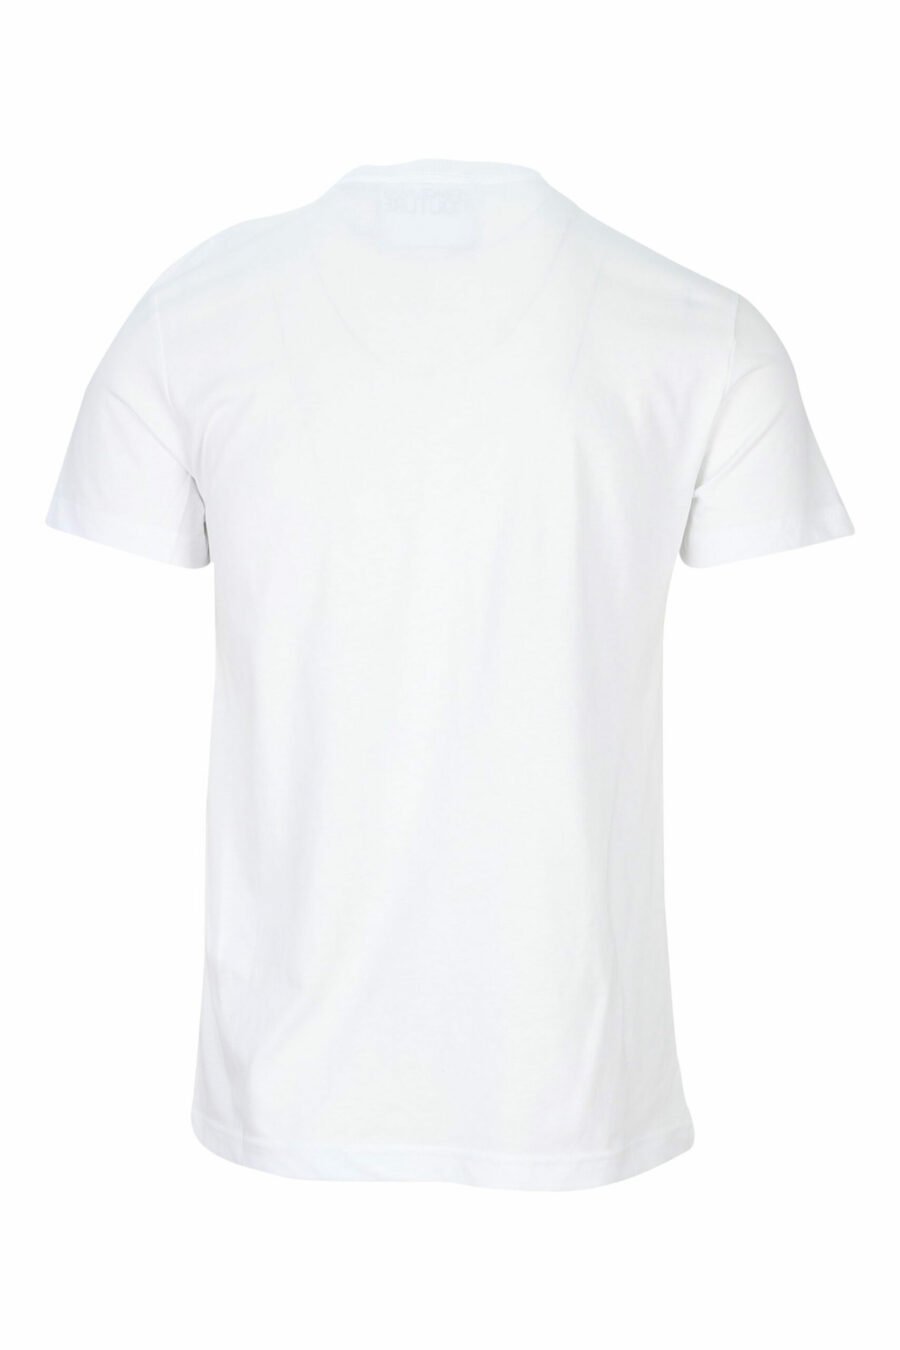 T-shirt blanc avec mini-logo circulaire noir - 8052019468526 1 à l'échelle